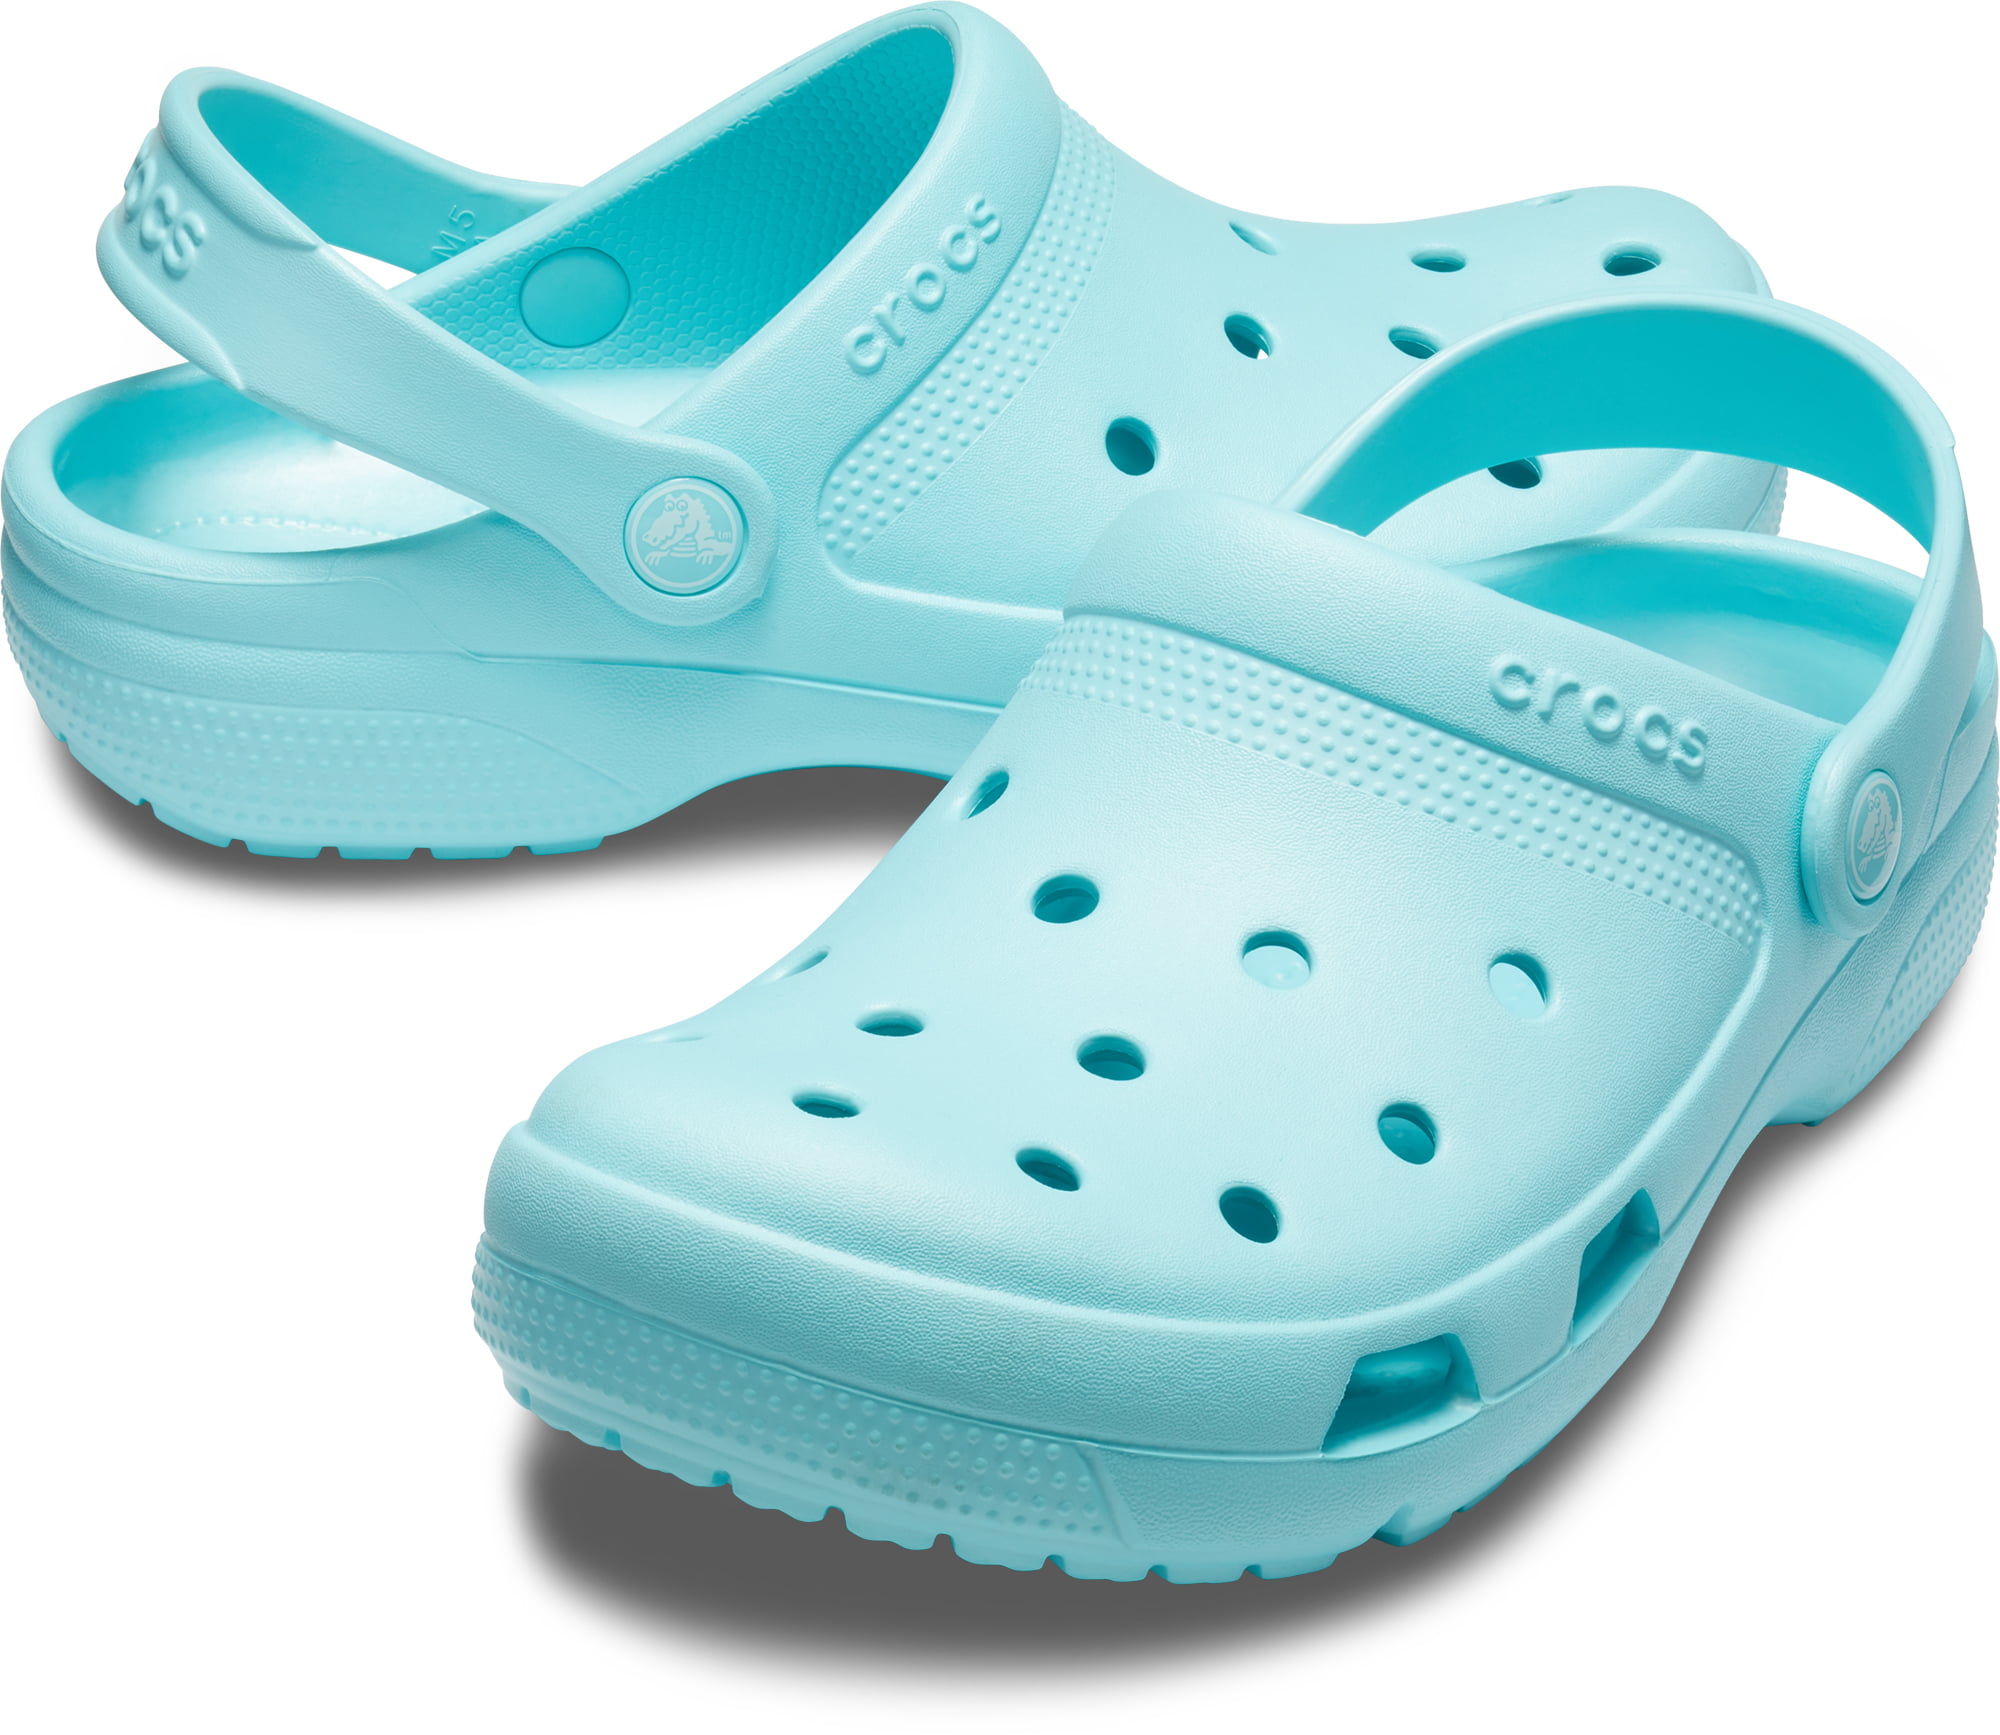 cheapest crocs shoes